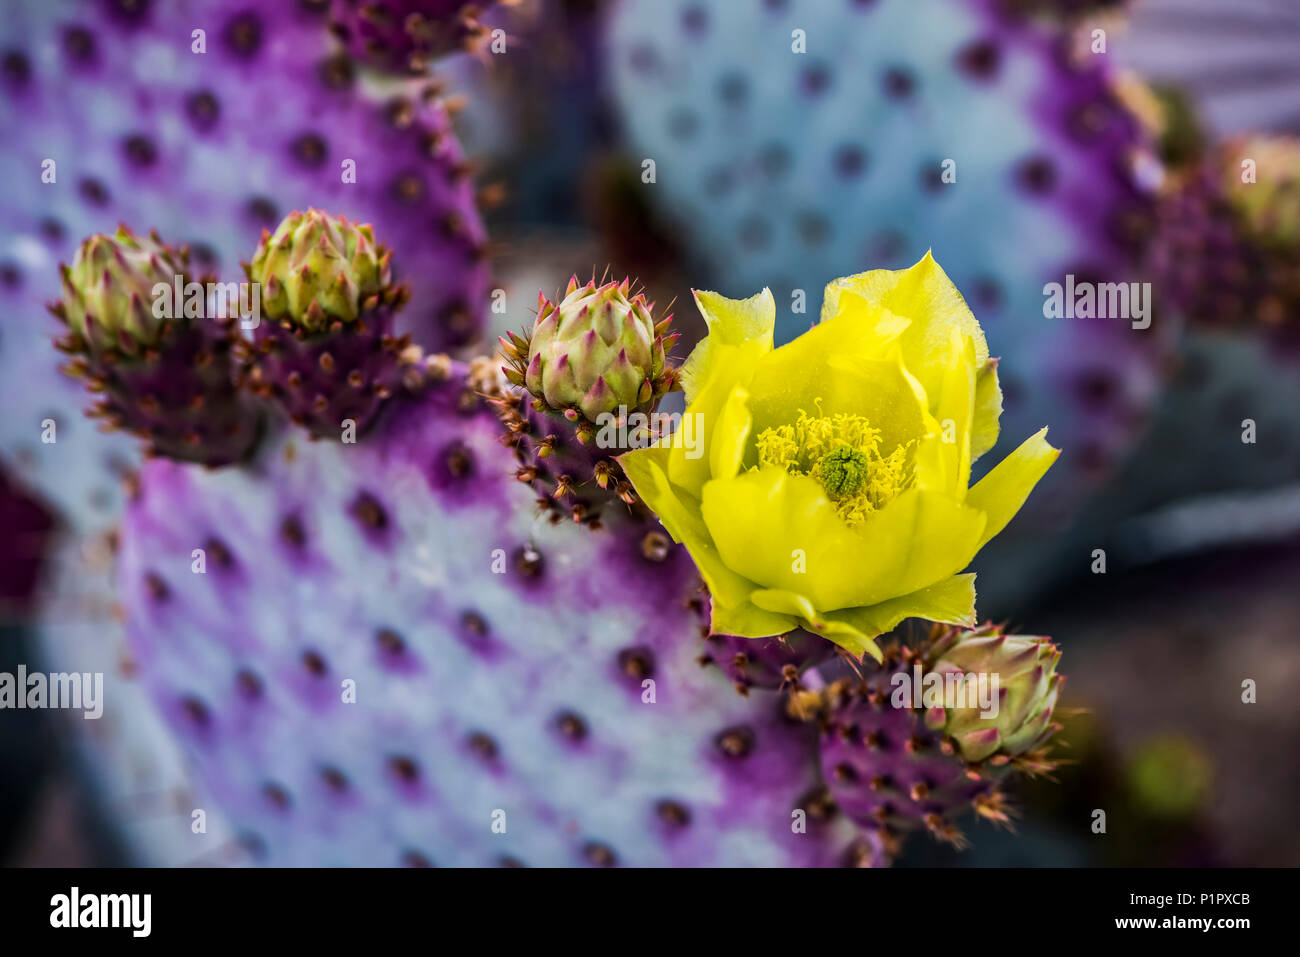 Le pollen laden centre dans la fleur jaune d'un Cactus (Opuntia) flower et futurs boutons ; Arizona, États-Unis d'Amérique Banque D'Images